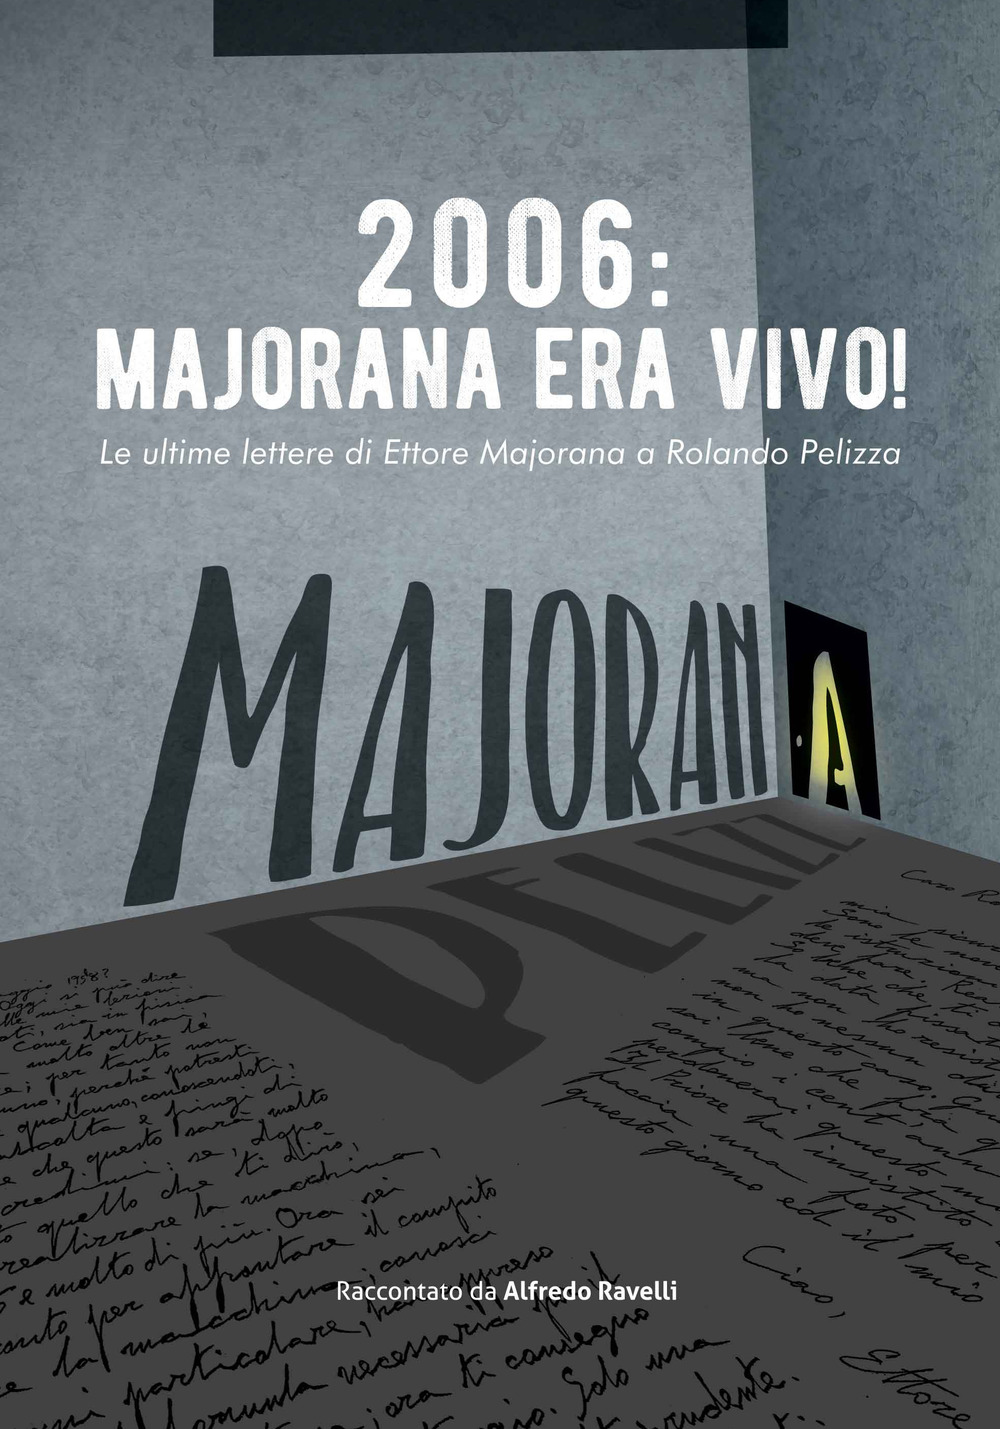 2006: Majorana era vivo! Le ultime lettere di Ettore Majorana a Rolando Pelizza